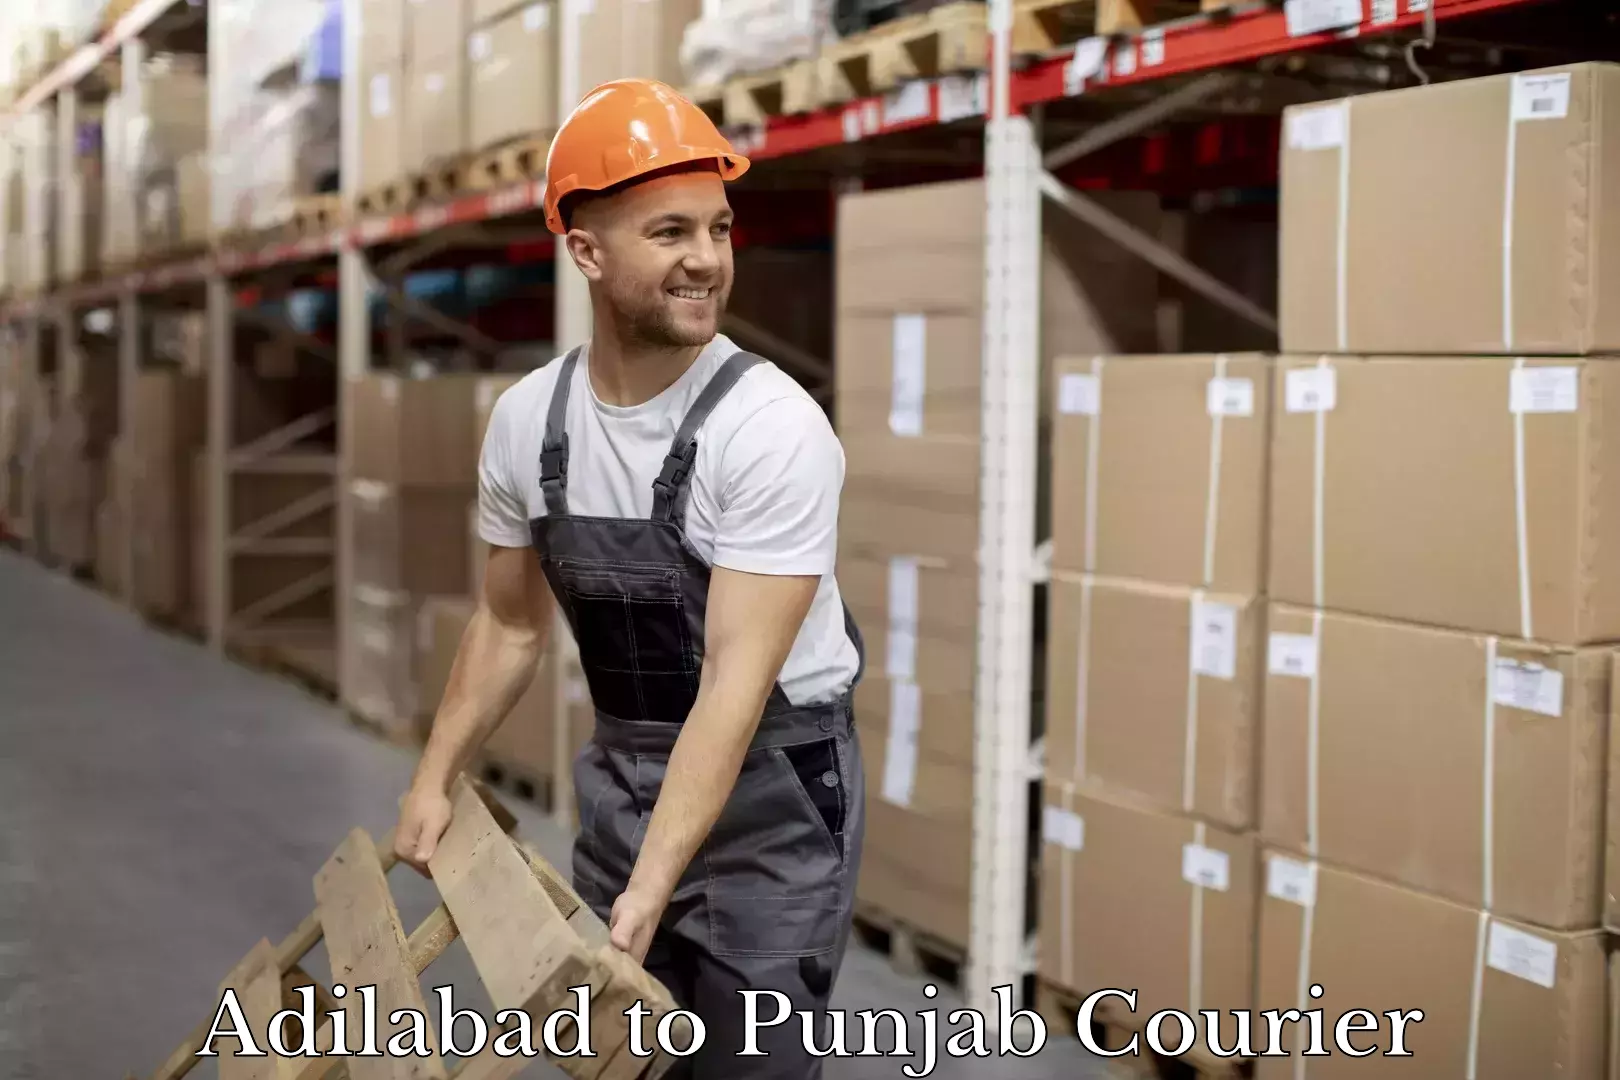 Smart shipping technology Adilabad to Punjab